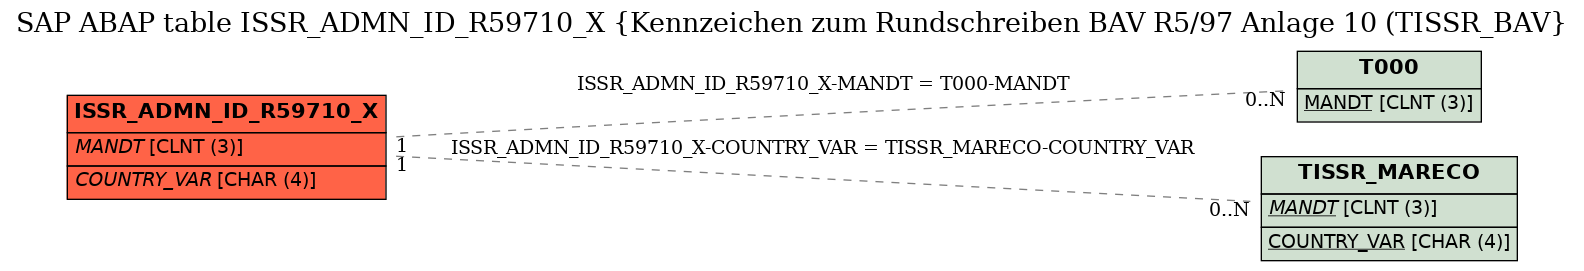 E-R Diagram for table ISSR_ADMN_ID_R59710_X (Kennzeichen zum Rundschreiben BAV R5/97 Anlage 10 (TISSR_BAV)